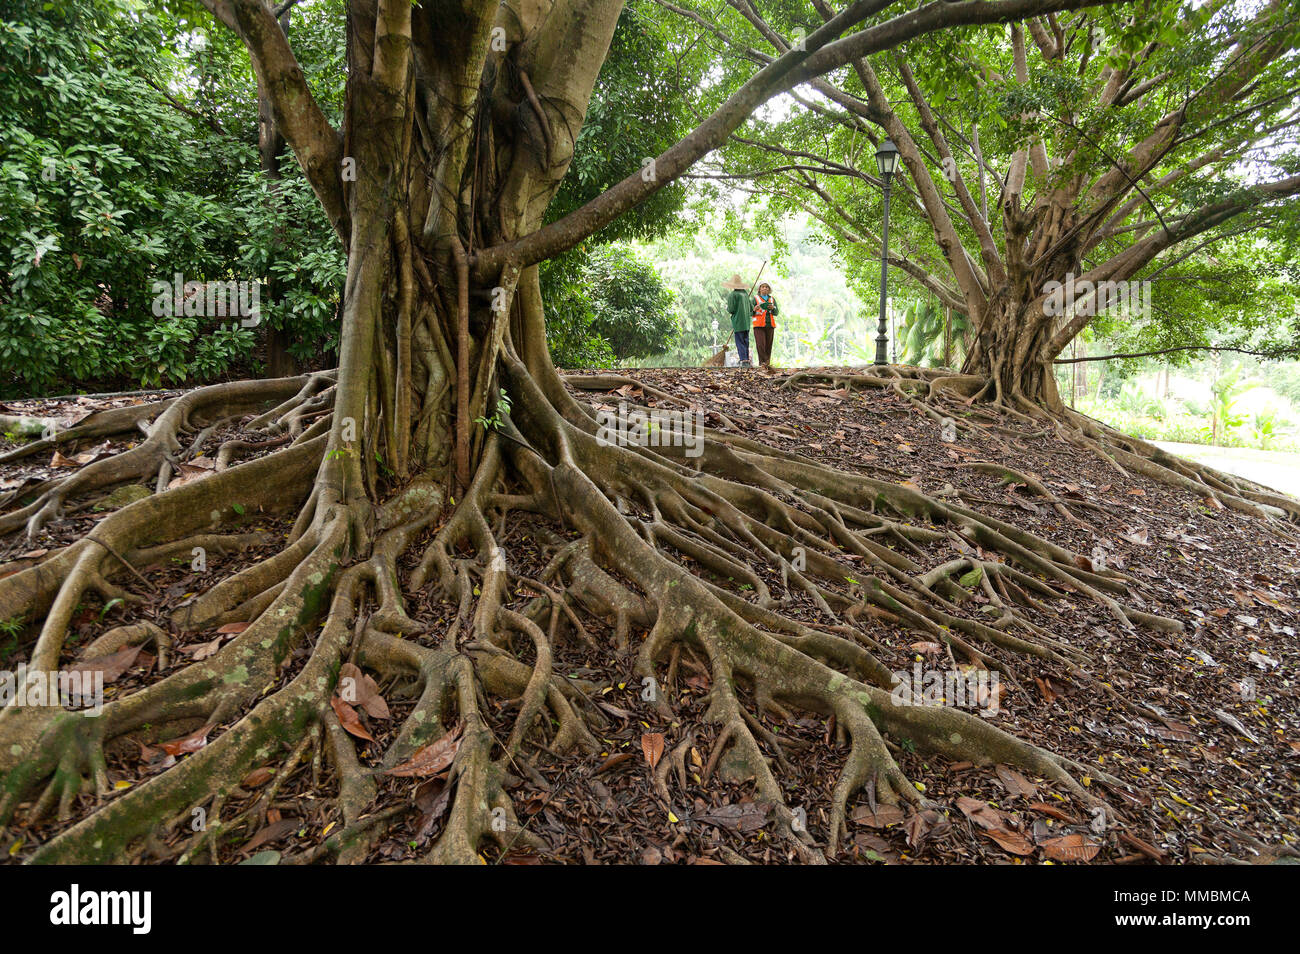 Antena espectacular las raíces del árbol se extienden sobre la superficie de la tierra, dos mujeres de pie en el fondo, Singapur Foto de stock